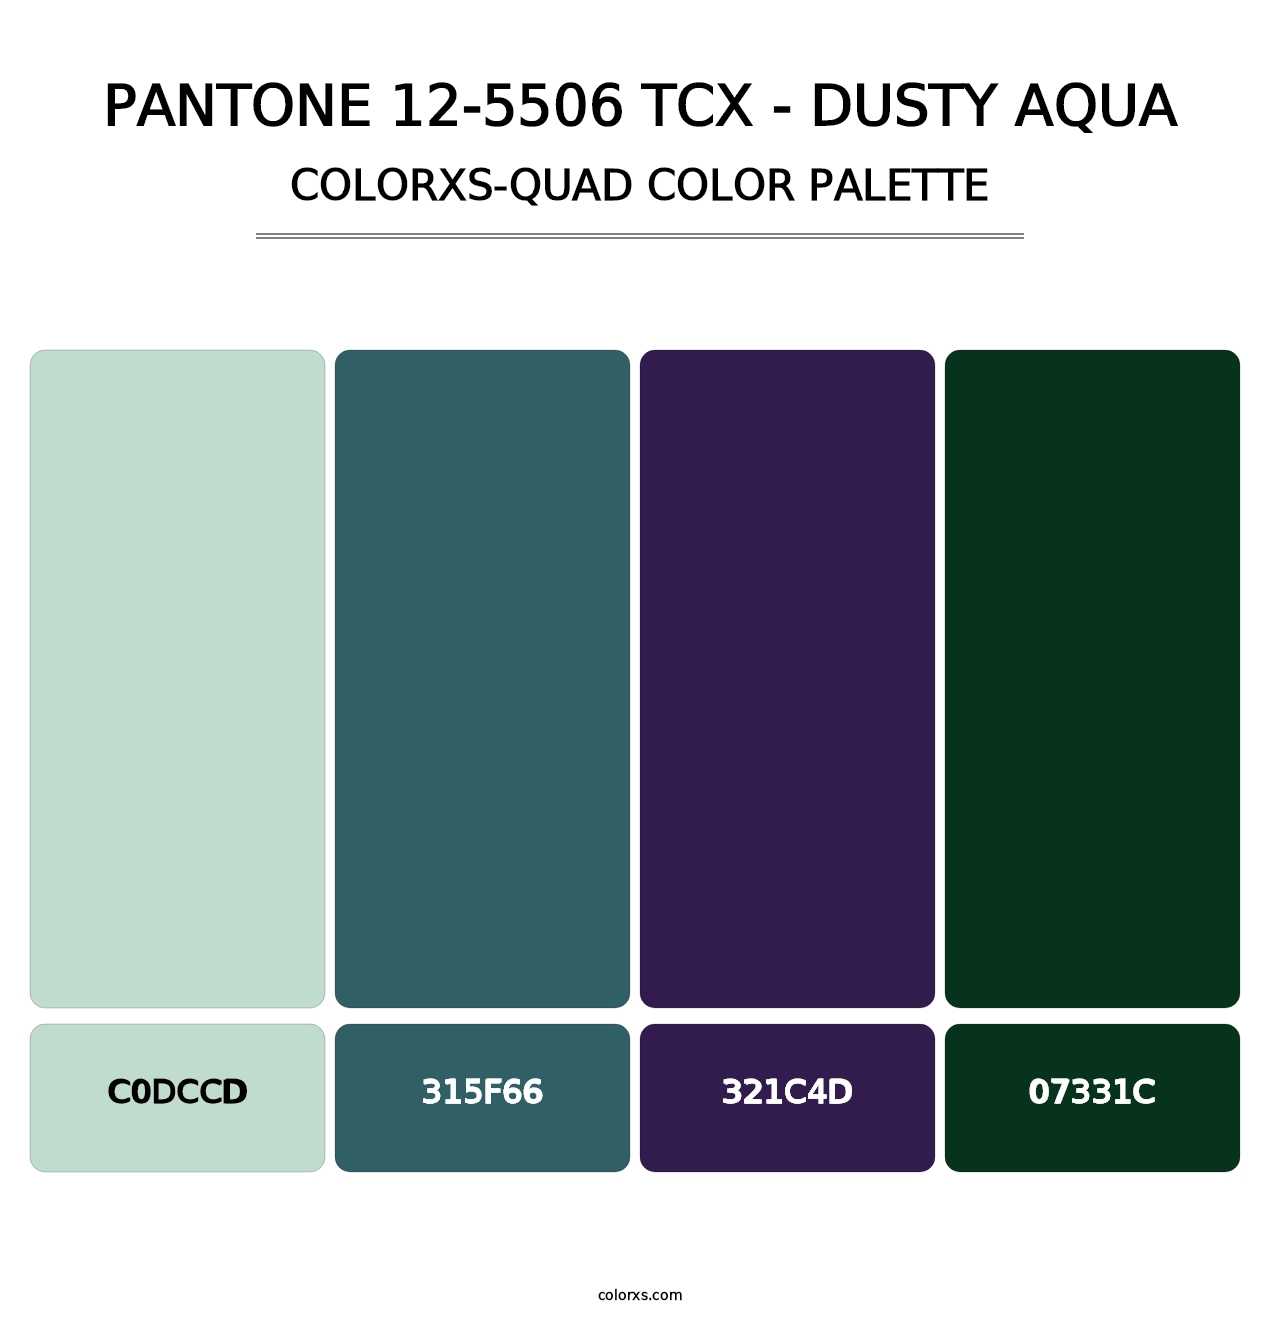 PANTONE 12-5506 TCX - Dusty Aqua - Colorxs Quad Palette